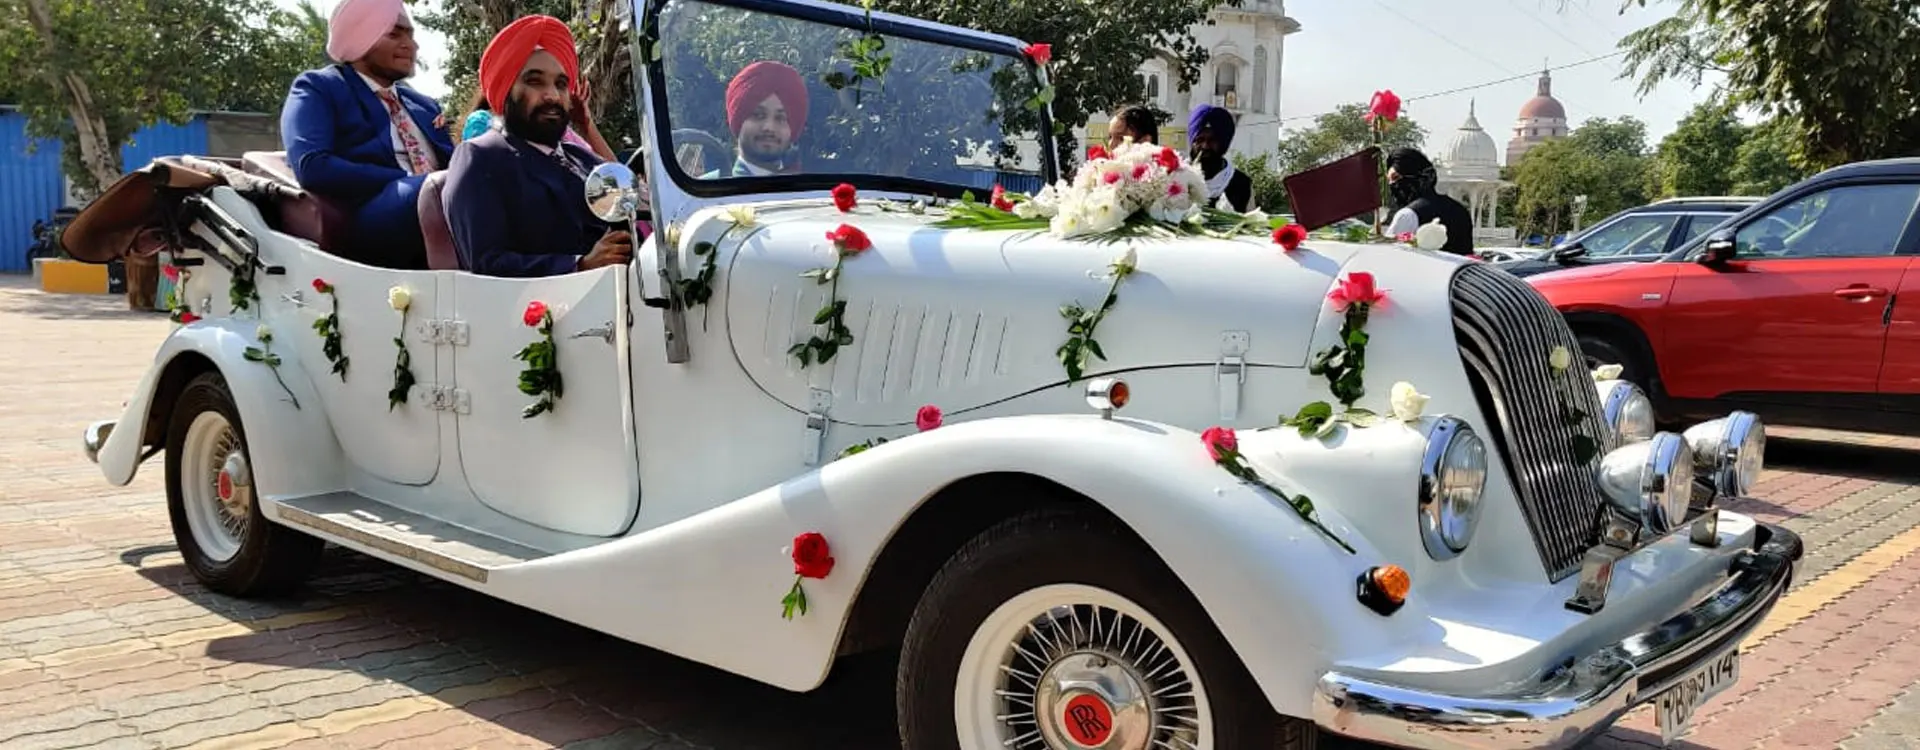 Wedding Cars in Delhi, Cars for Marriage, luxury Car in Delhi